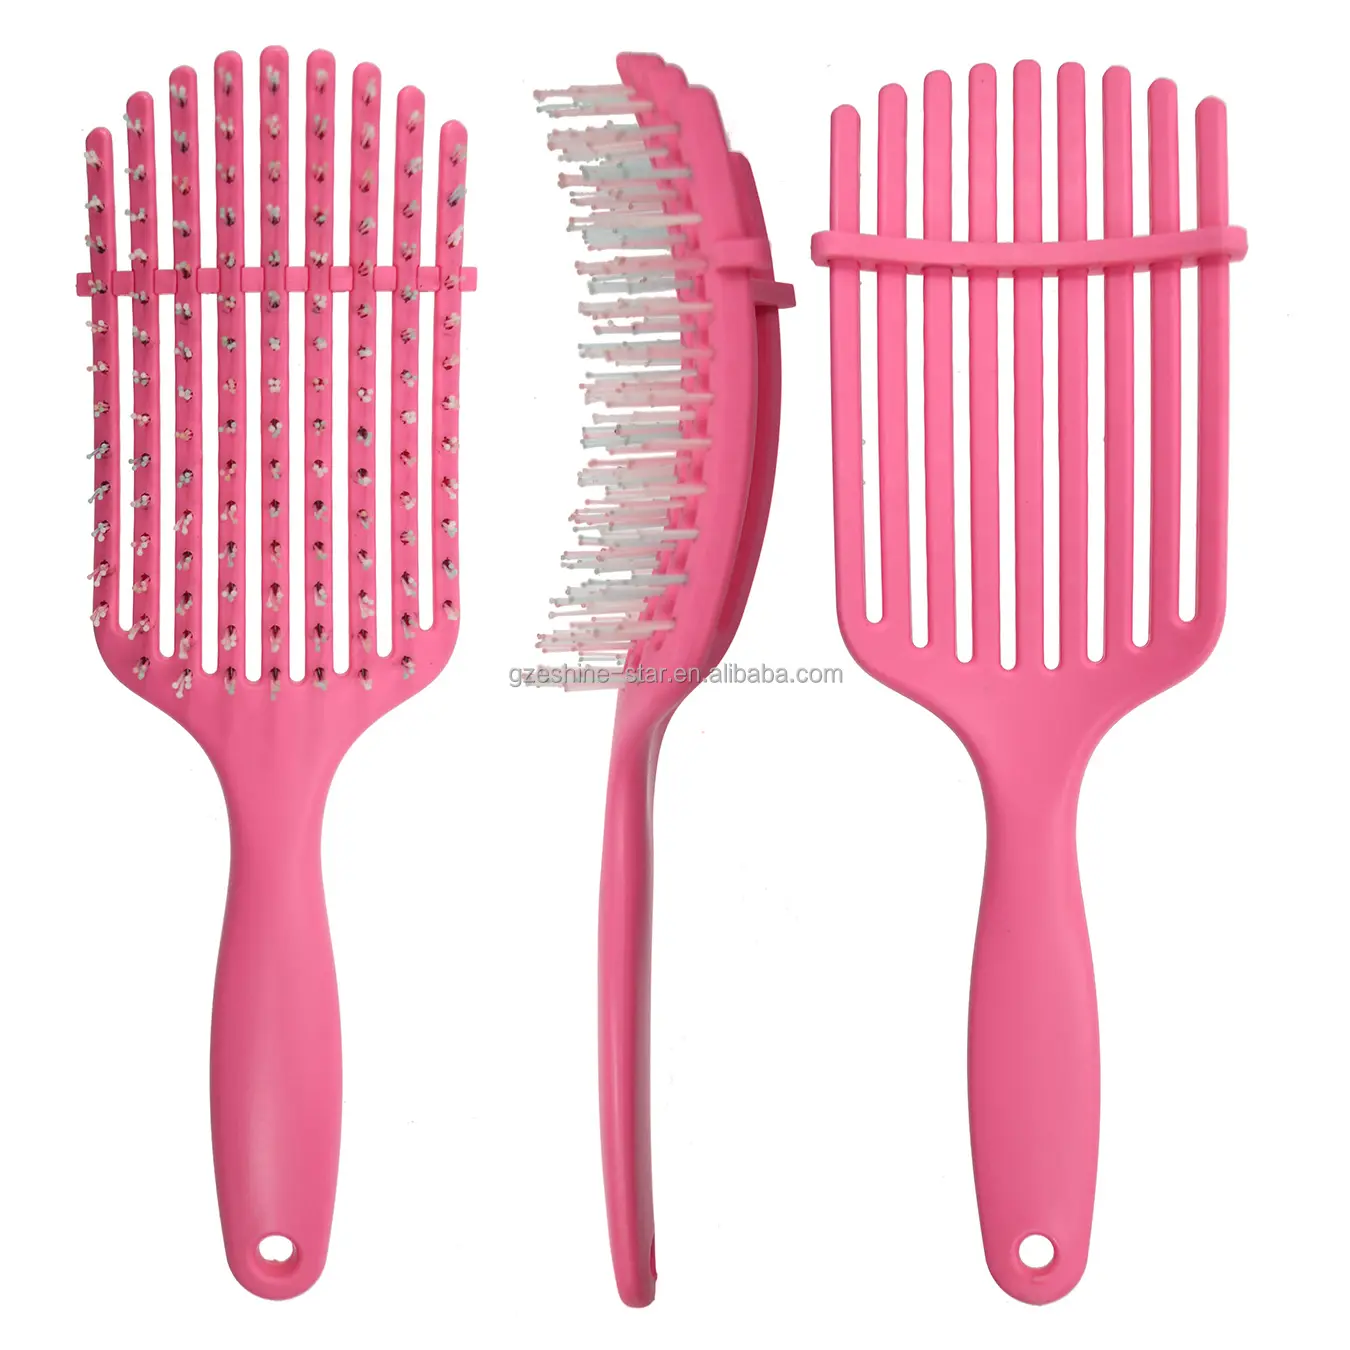 Индивидуальный дизайн, розовая изогнутая щетка для распутывания волос, для натуральных волос, 9 когтей, гибкая щетка для волос